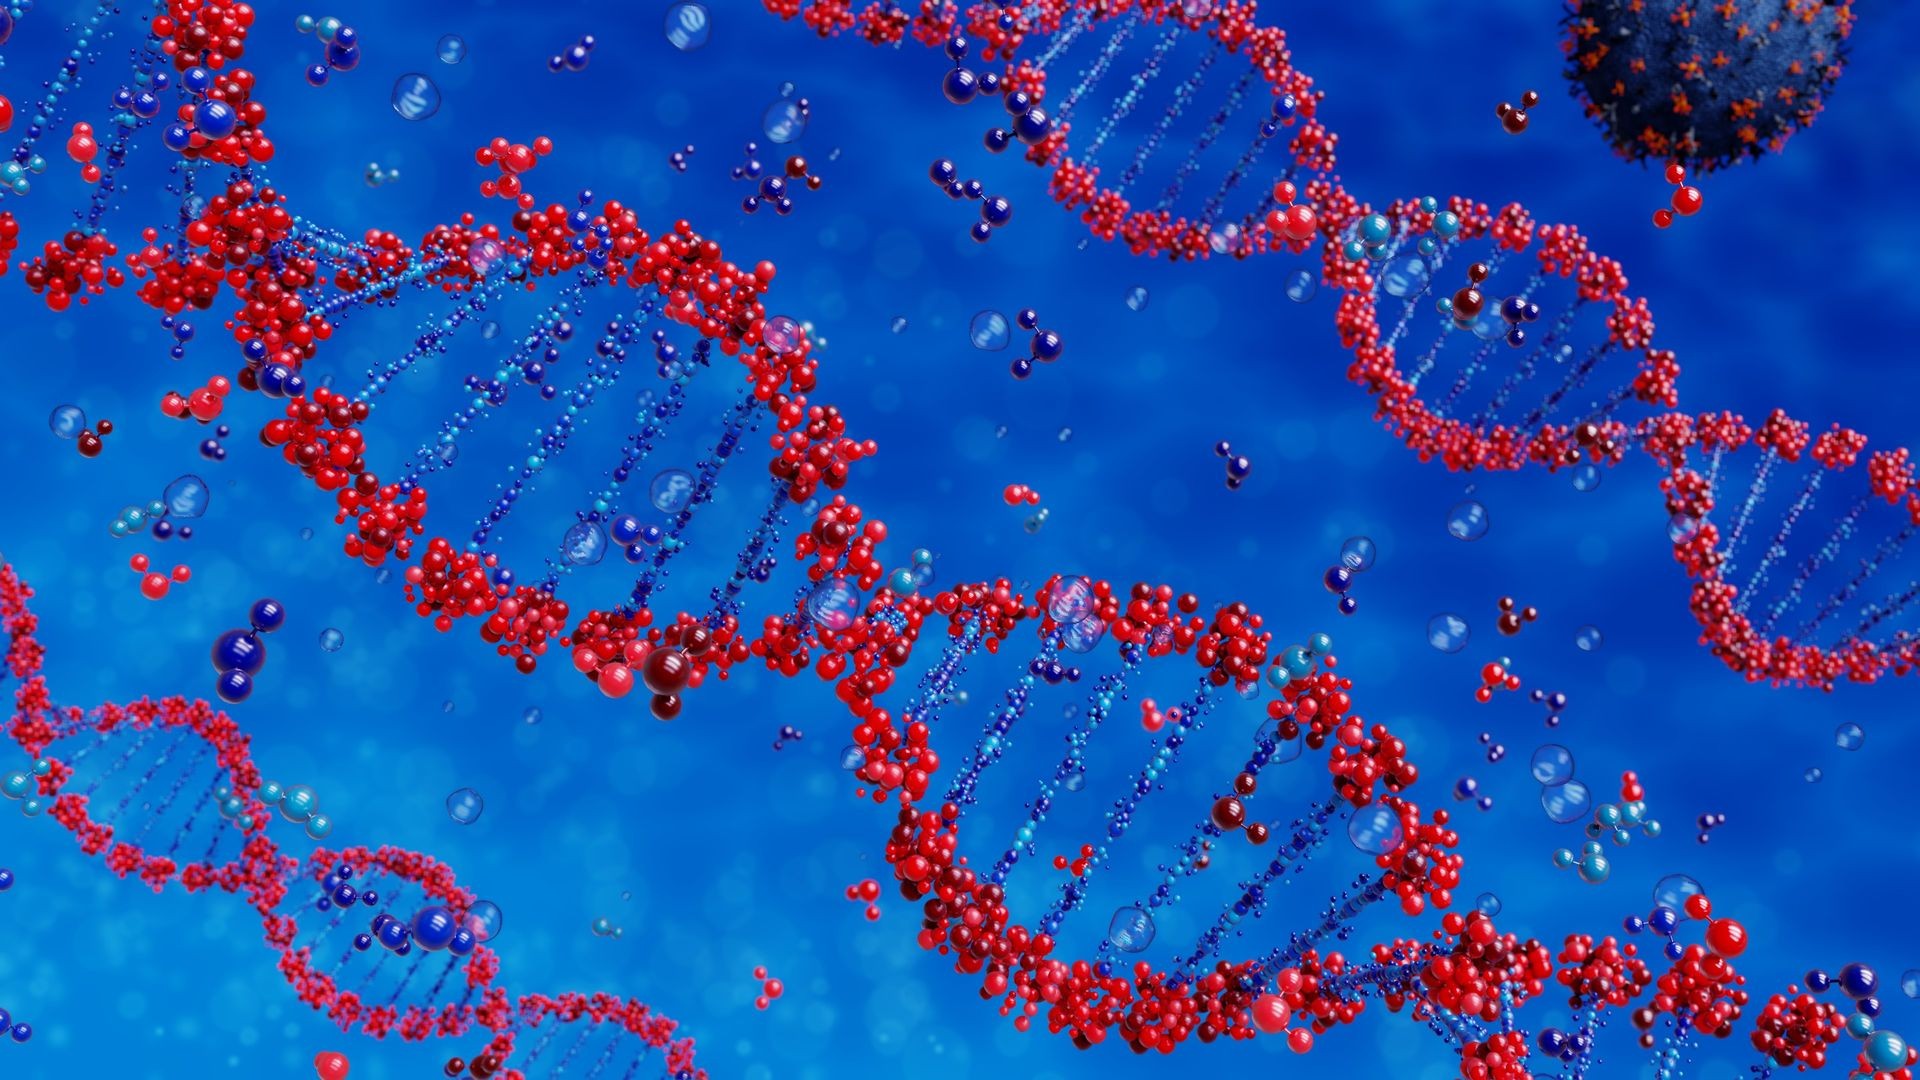 Virus destroys DNA strands